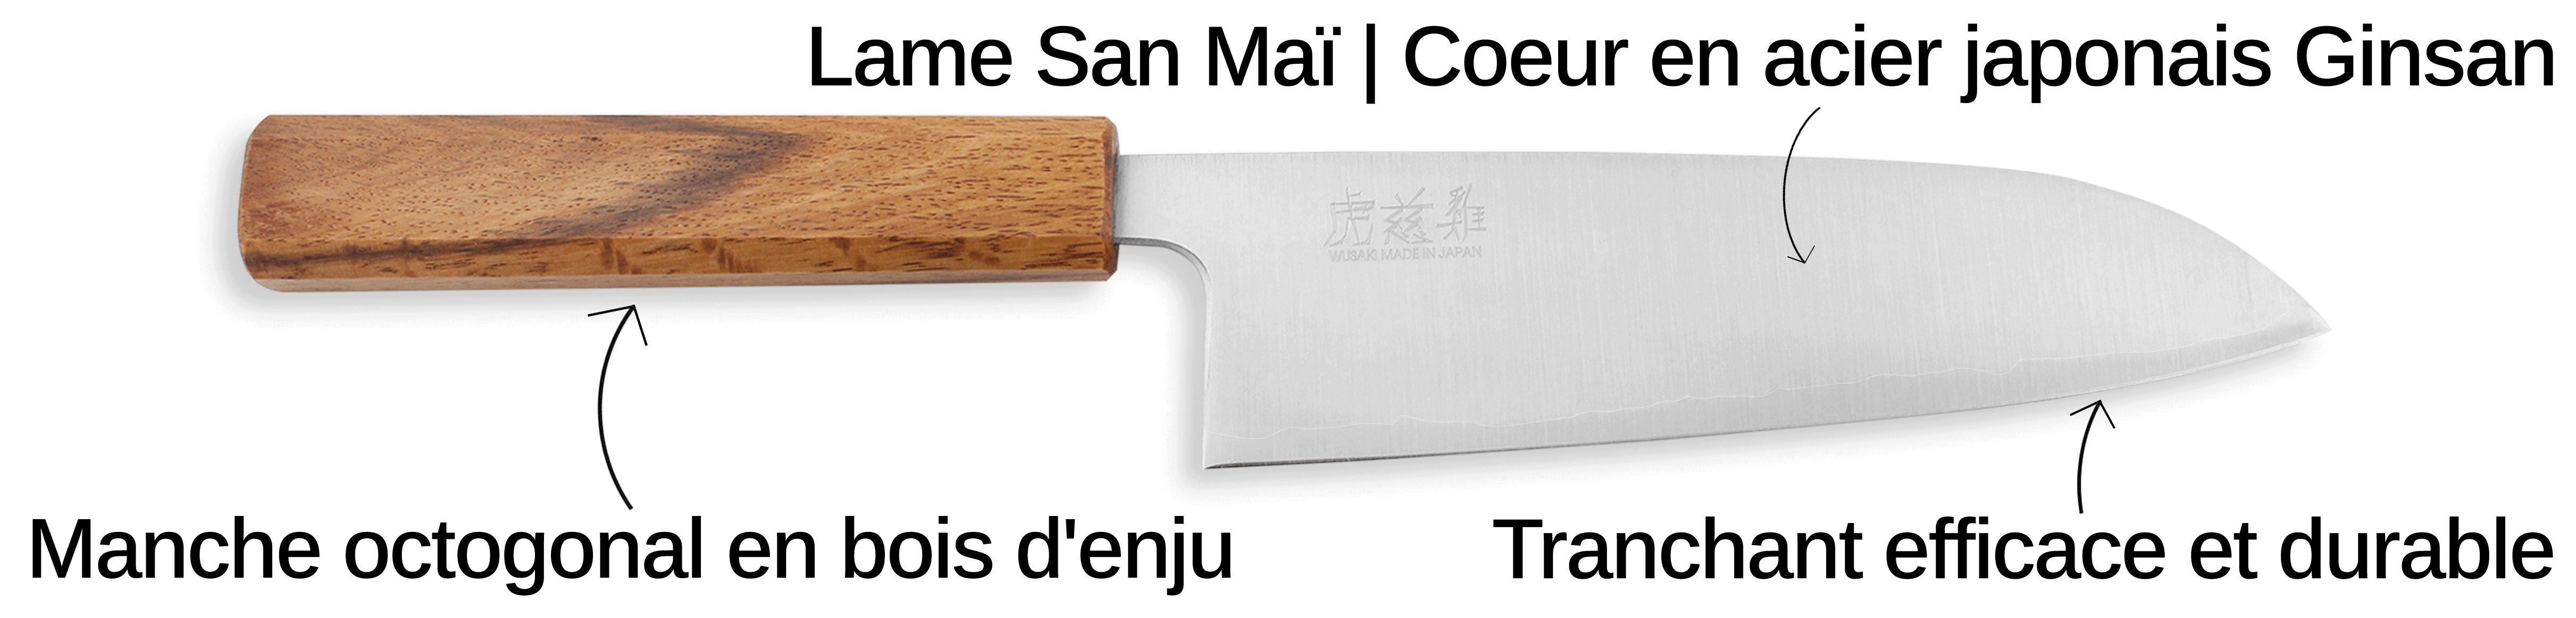 Découvrez le couteau Wusaki Migaki G3 ici